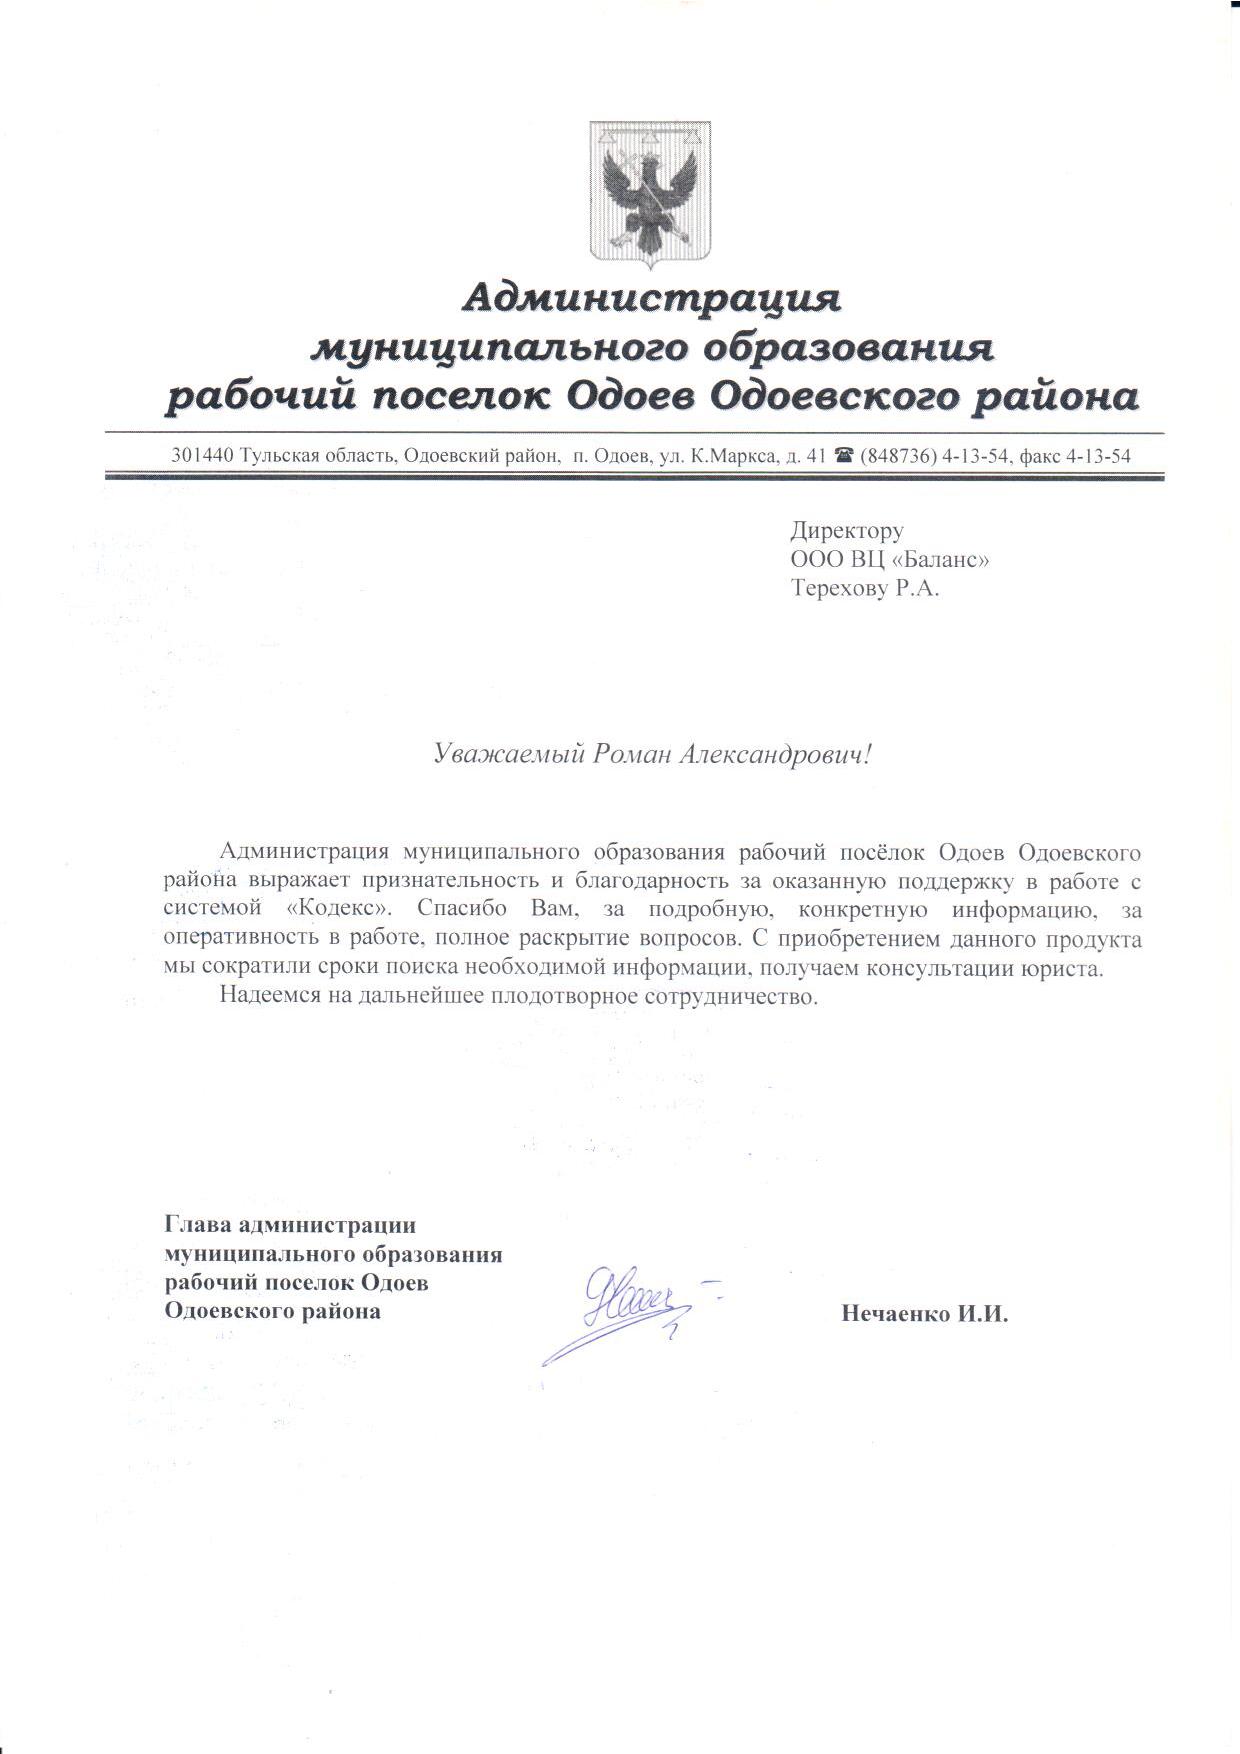 Администрация муниципального образования рабочий поселок Одоев Одоевского района